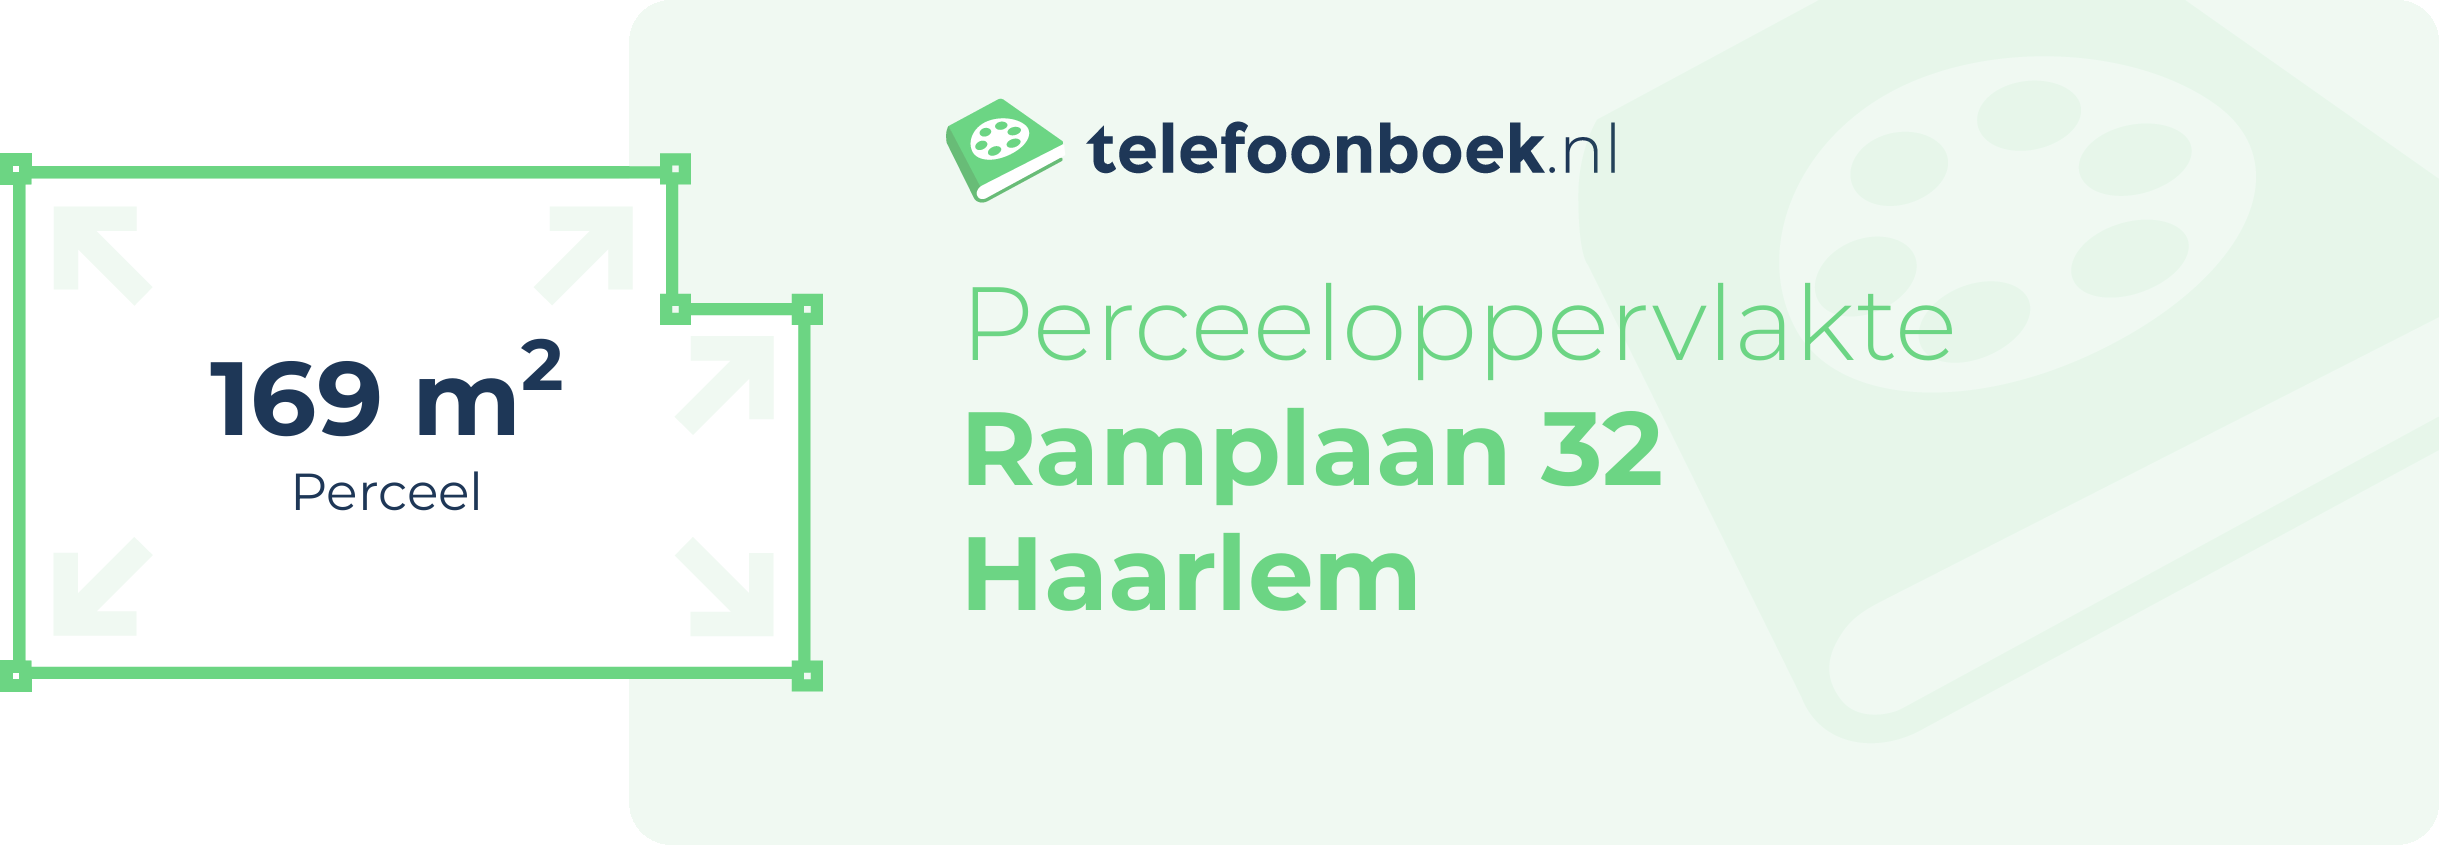 Perceeloppervlakte Ramplaan 32 Haarlem